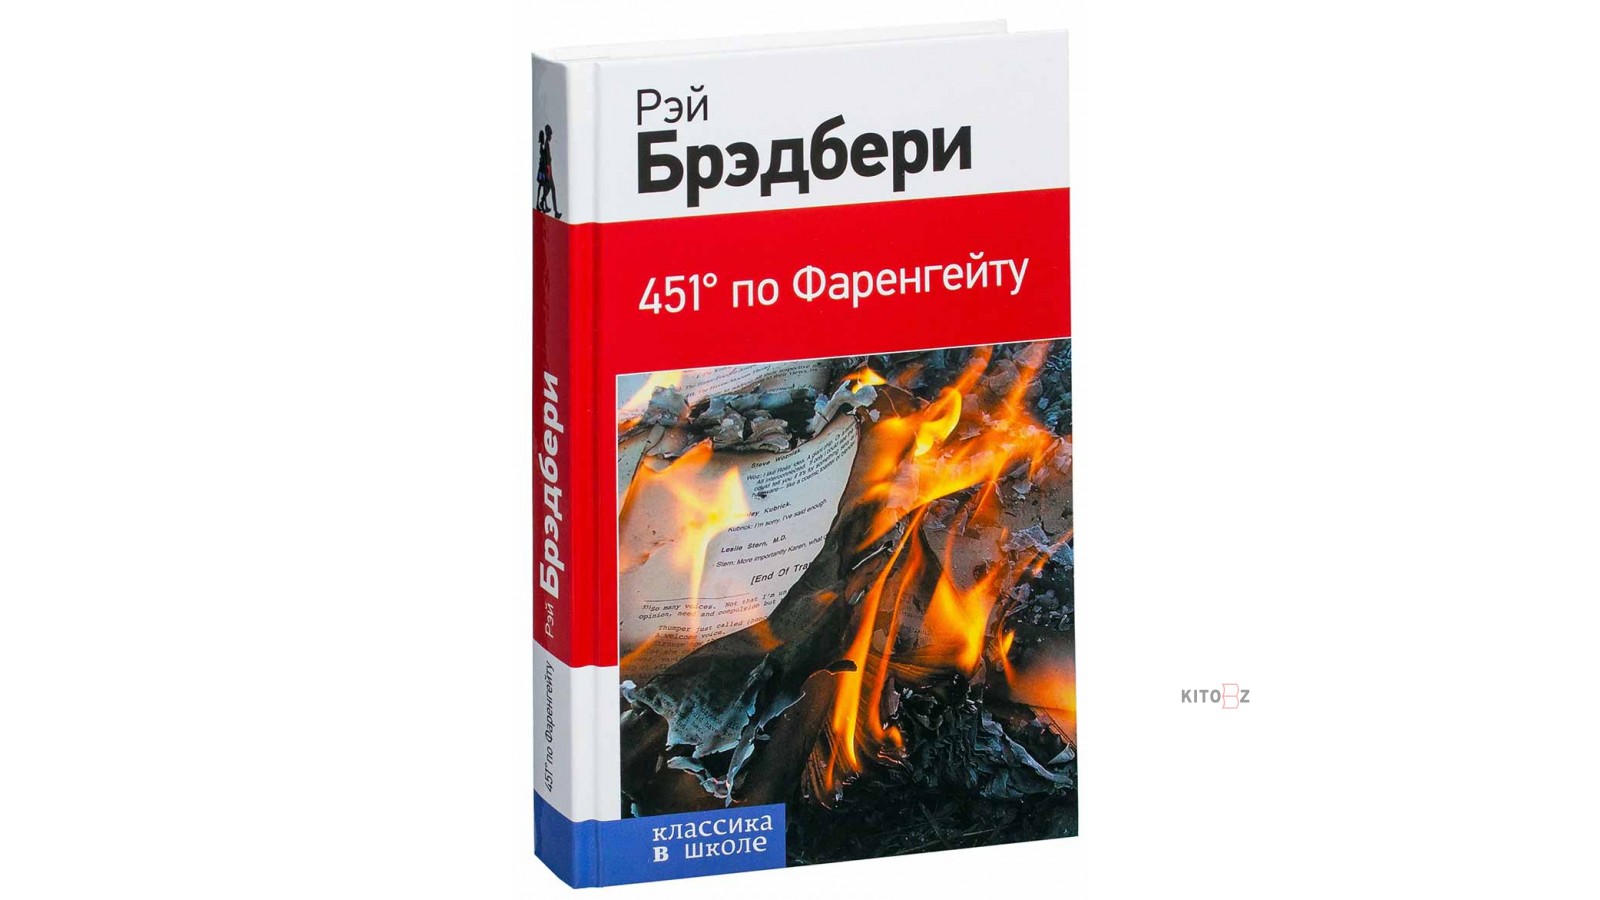 Рей Брэдбери «451 градус по Фаренгейту». Книга «451 градус по Фаренгейту» Рея Брэдбери.